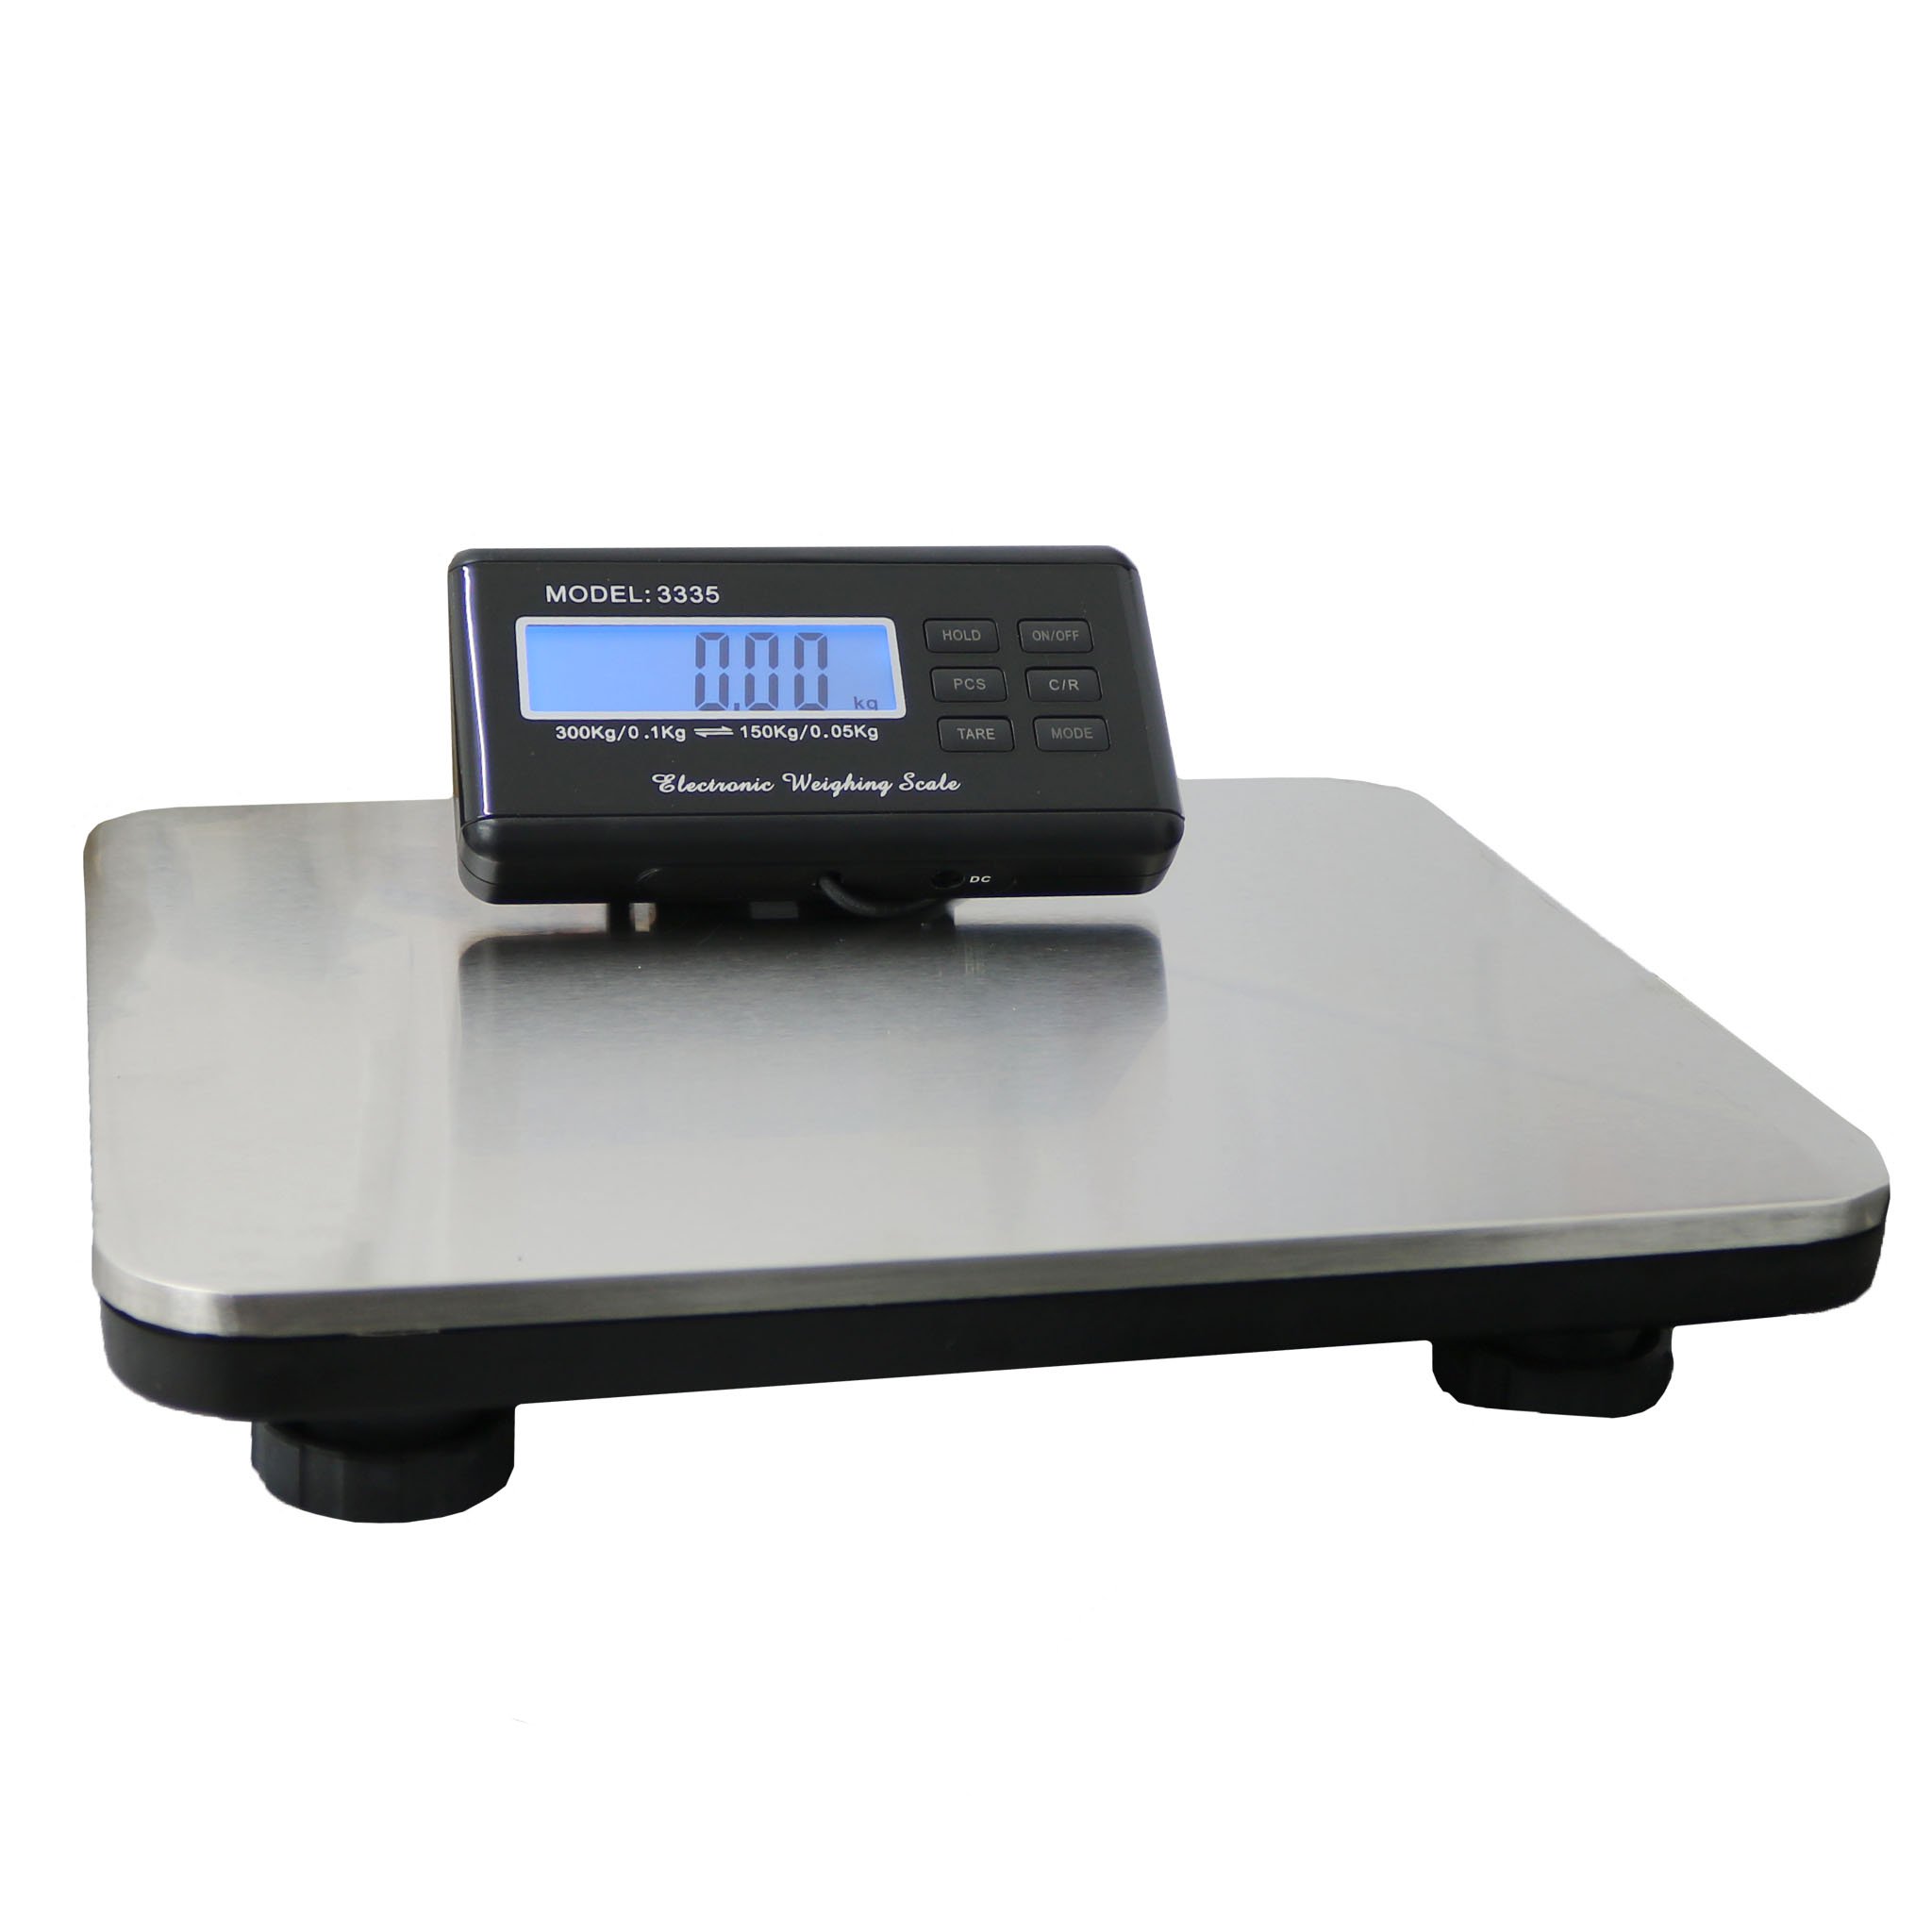 Heavy Duty Digital Postal Parcel Scales Weighing 150kg/300kg